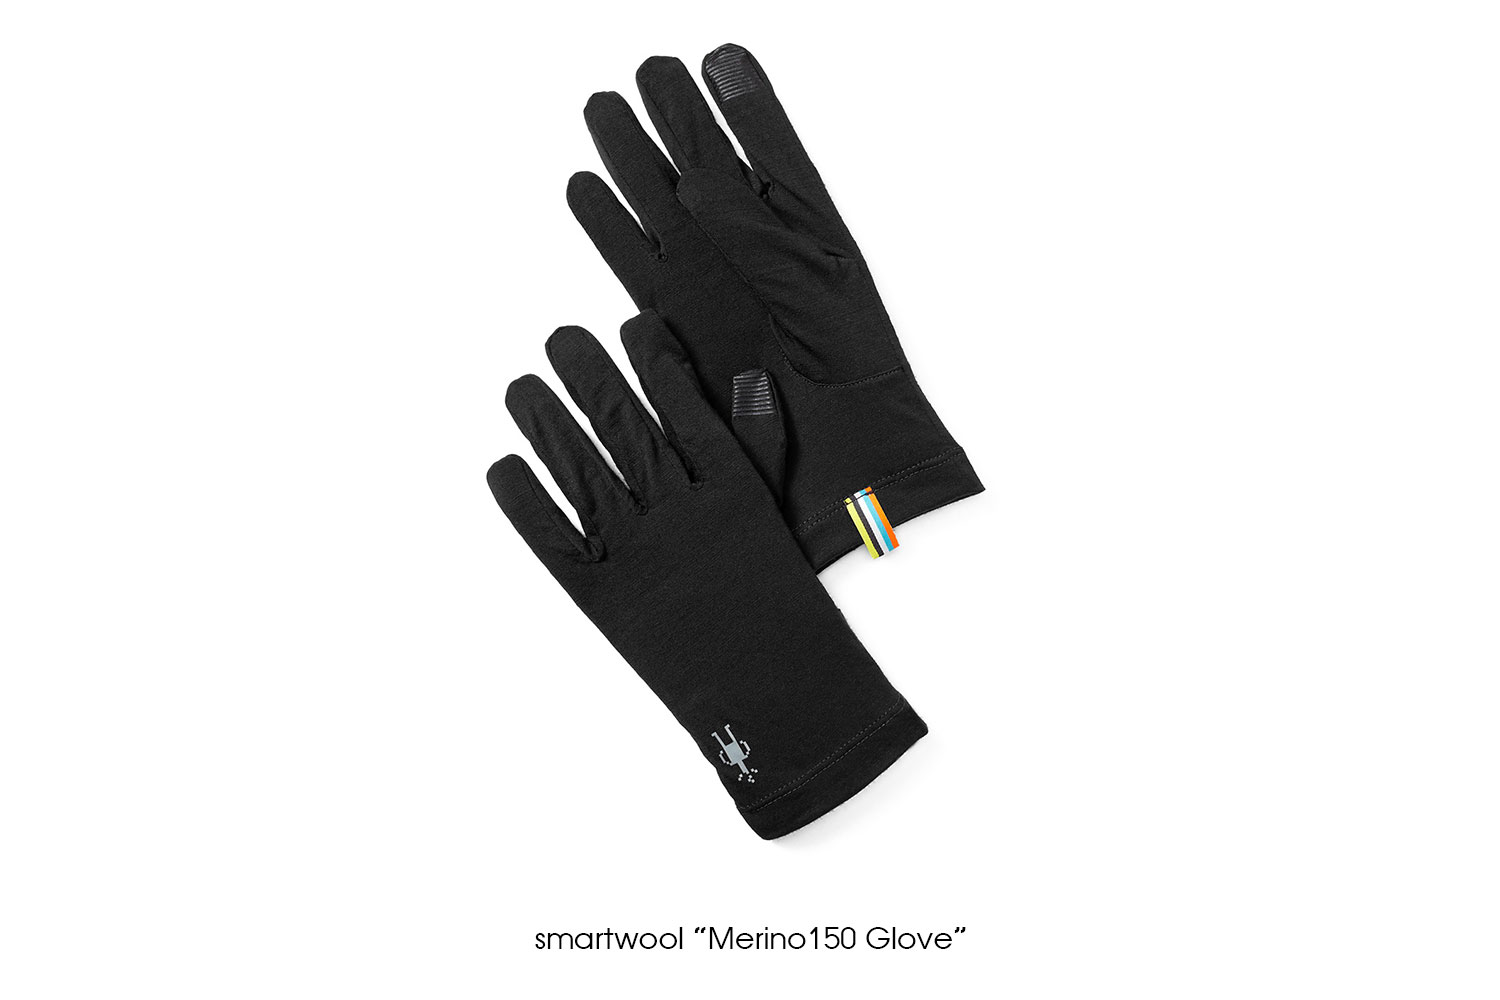 smartwool "Merino 150 Glove"